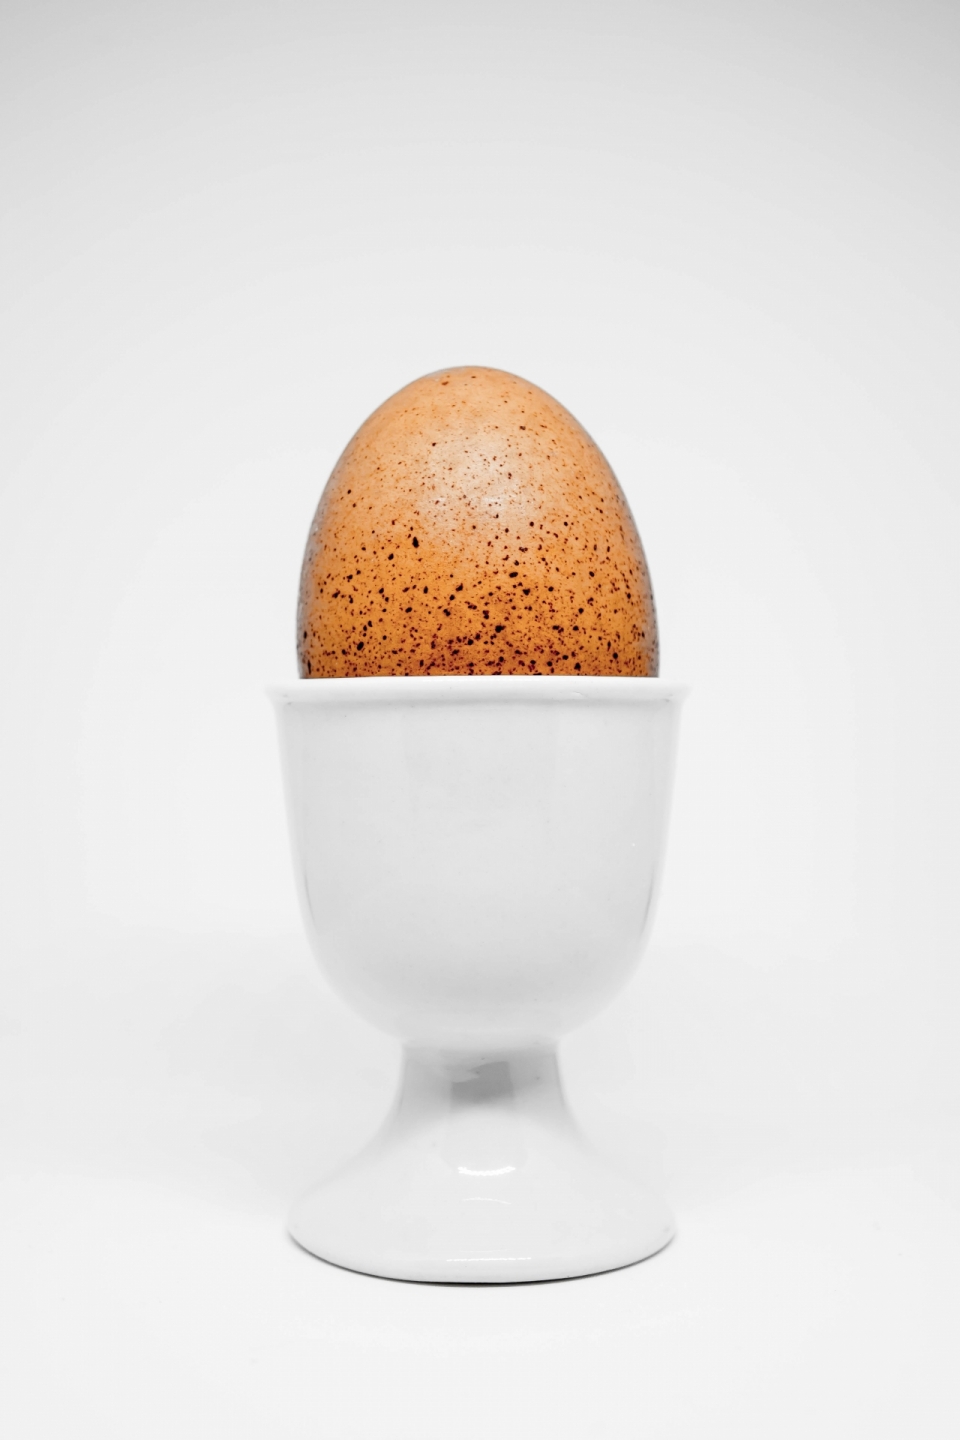 简约白色背景容器中新鲜健康鸡蛋